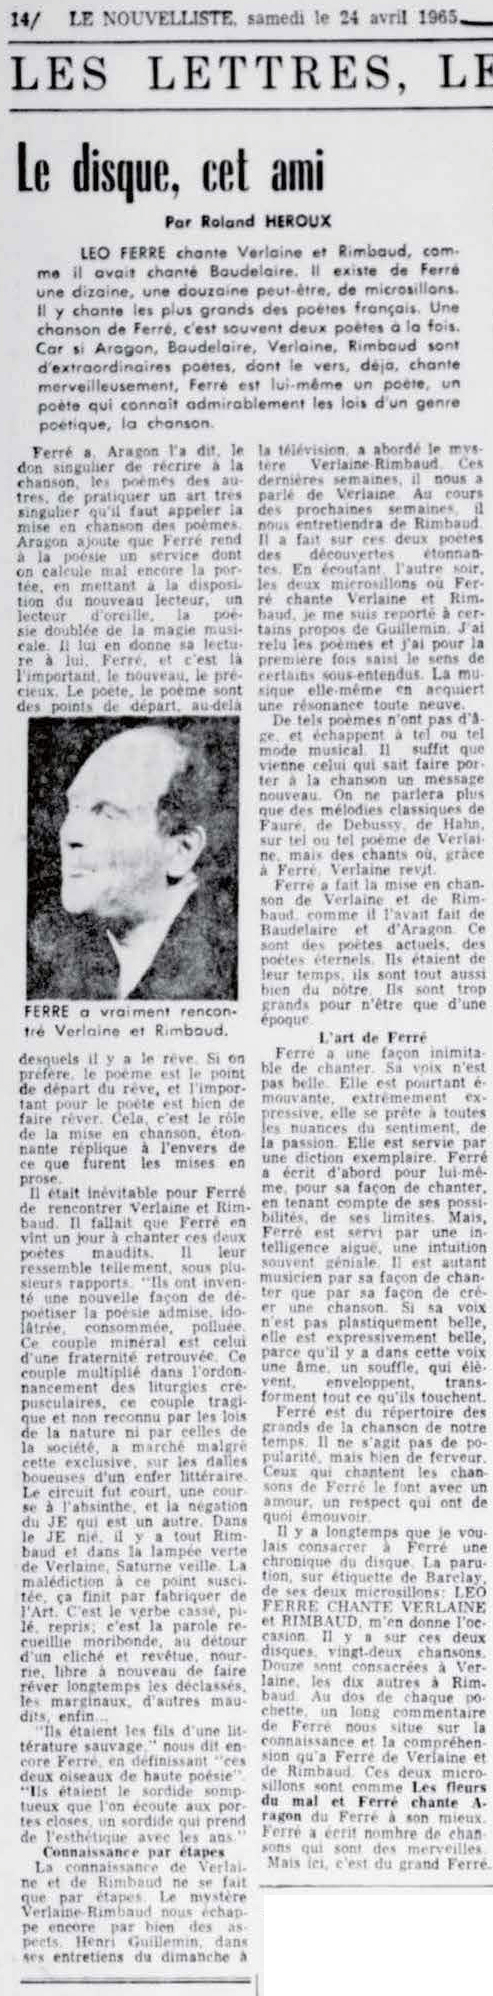 Léo Ferré - Le nouvelliste, 1920-, samedi 24 avril 1965